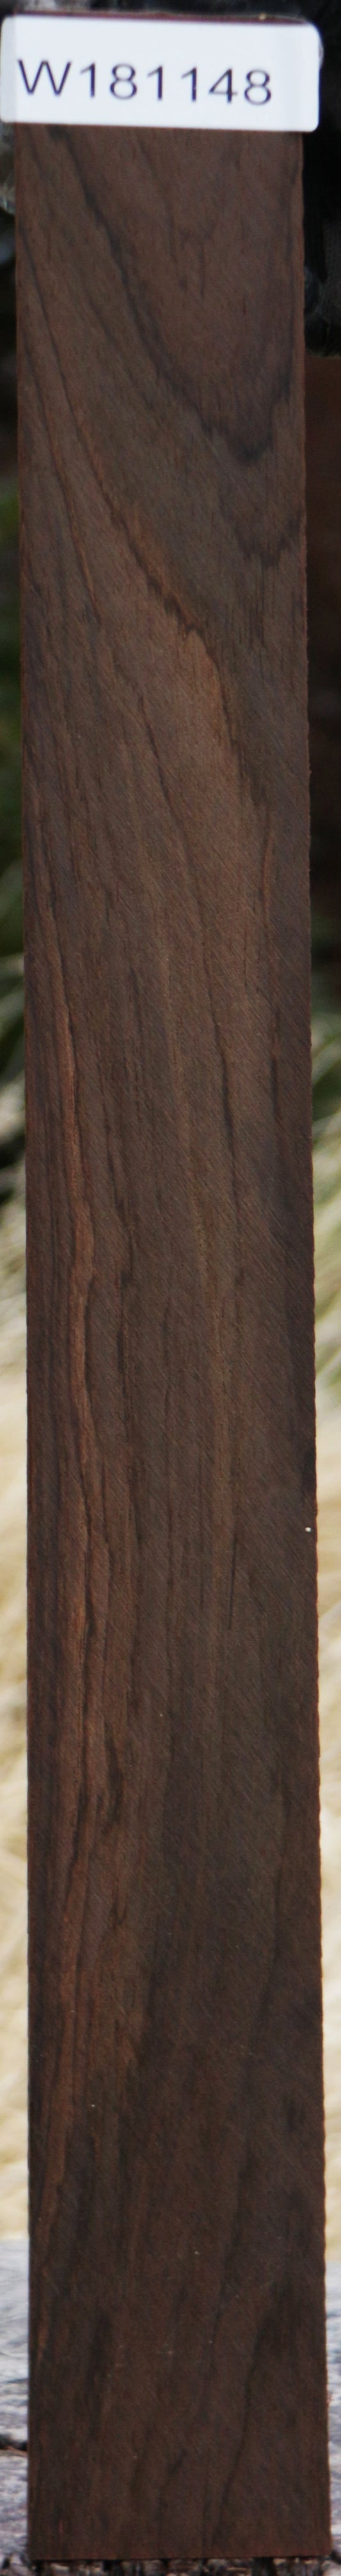 Quartersawn Brazilian Rosewood Micro Lumber